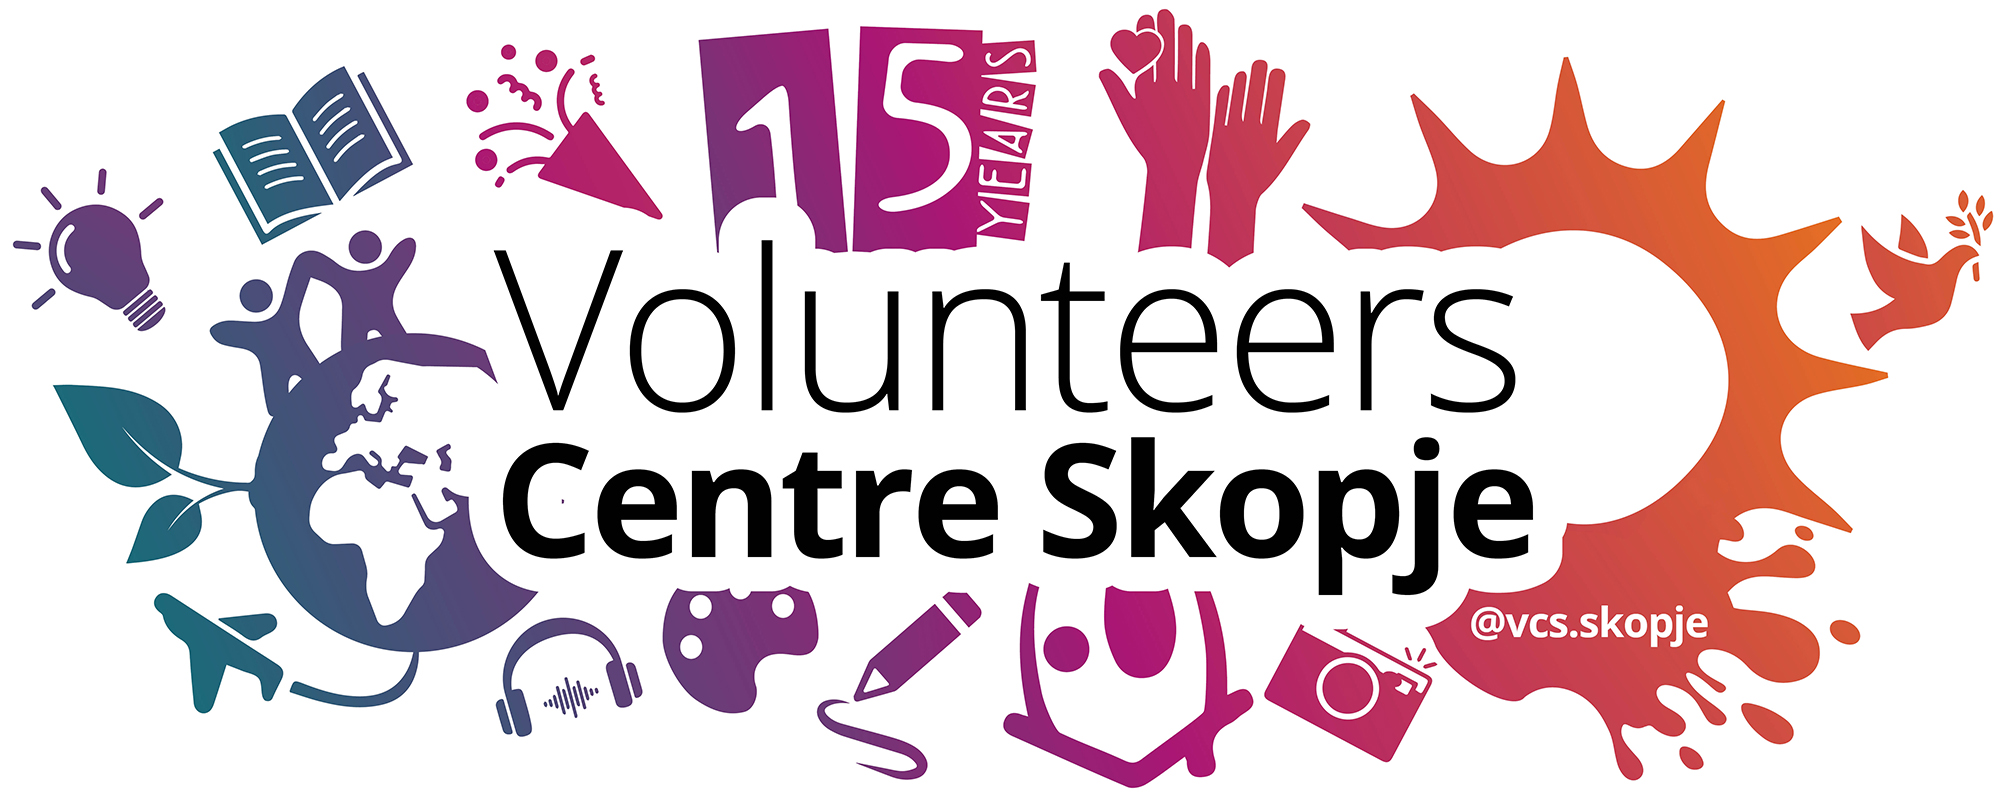 Volunteers Centre Skopje